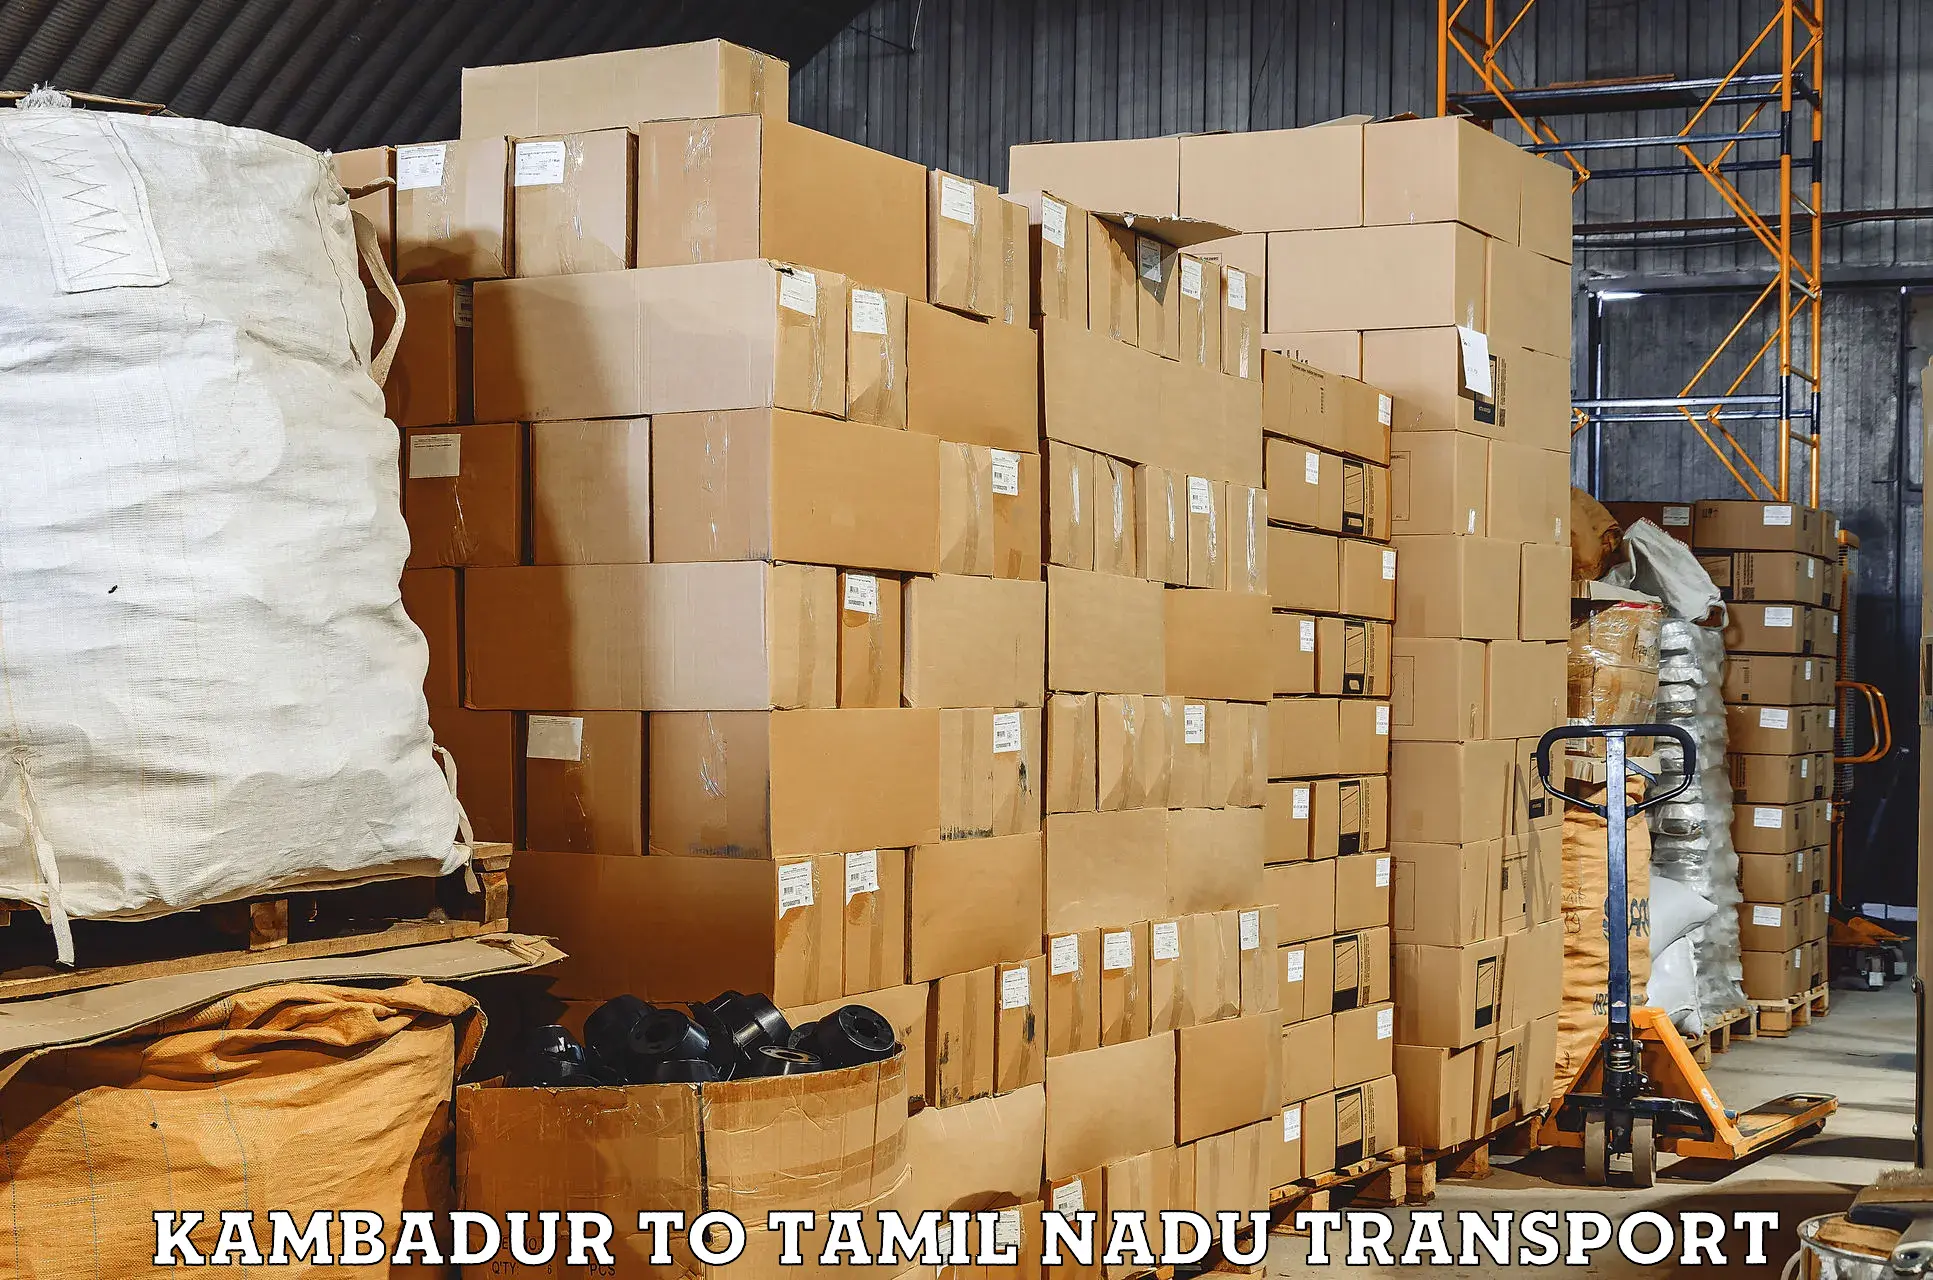 Road transport services in Kambadur to Cumbum